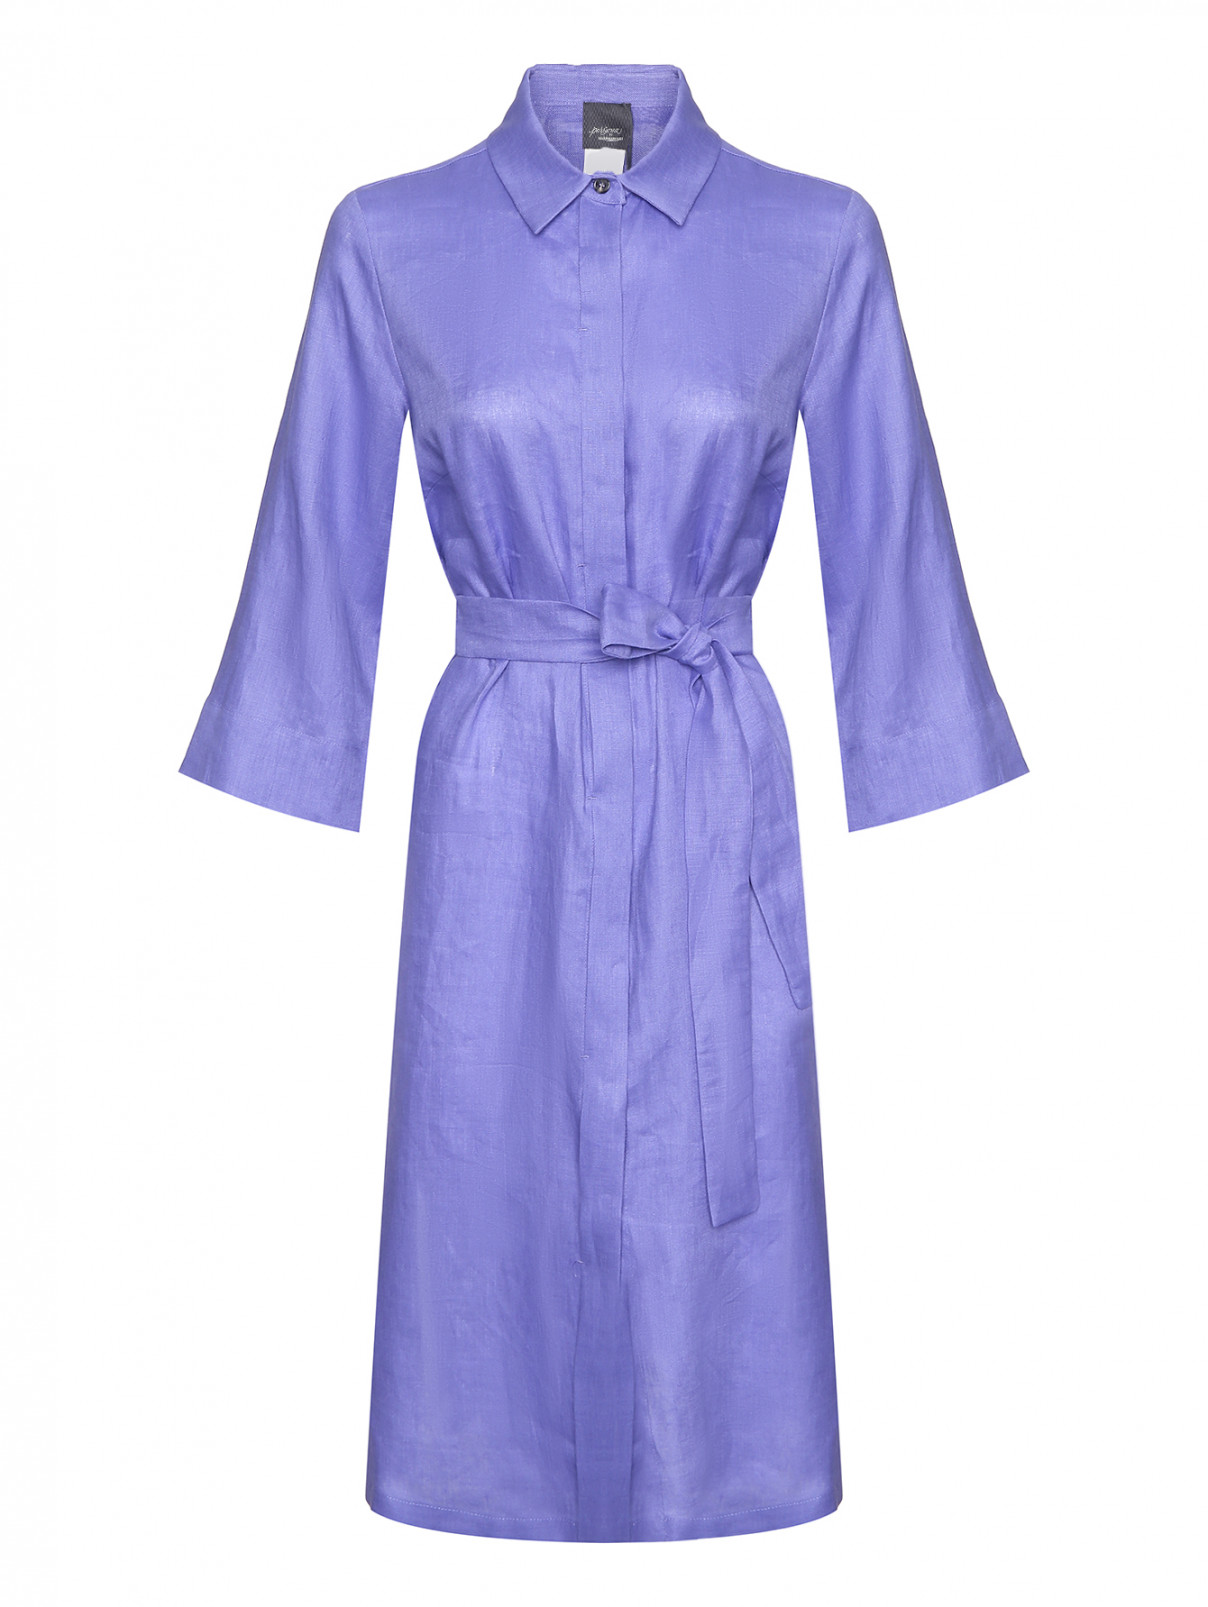 Платье-рубашка из льна Persona by Marina Rinaldi  –  Общий вид  – Цвет:  Синий